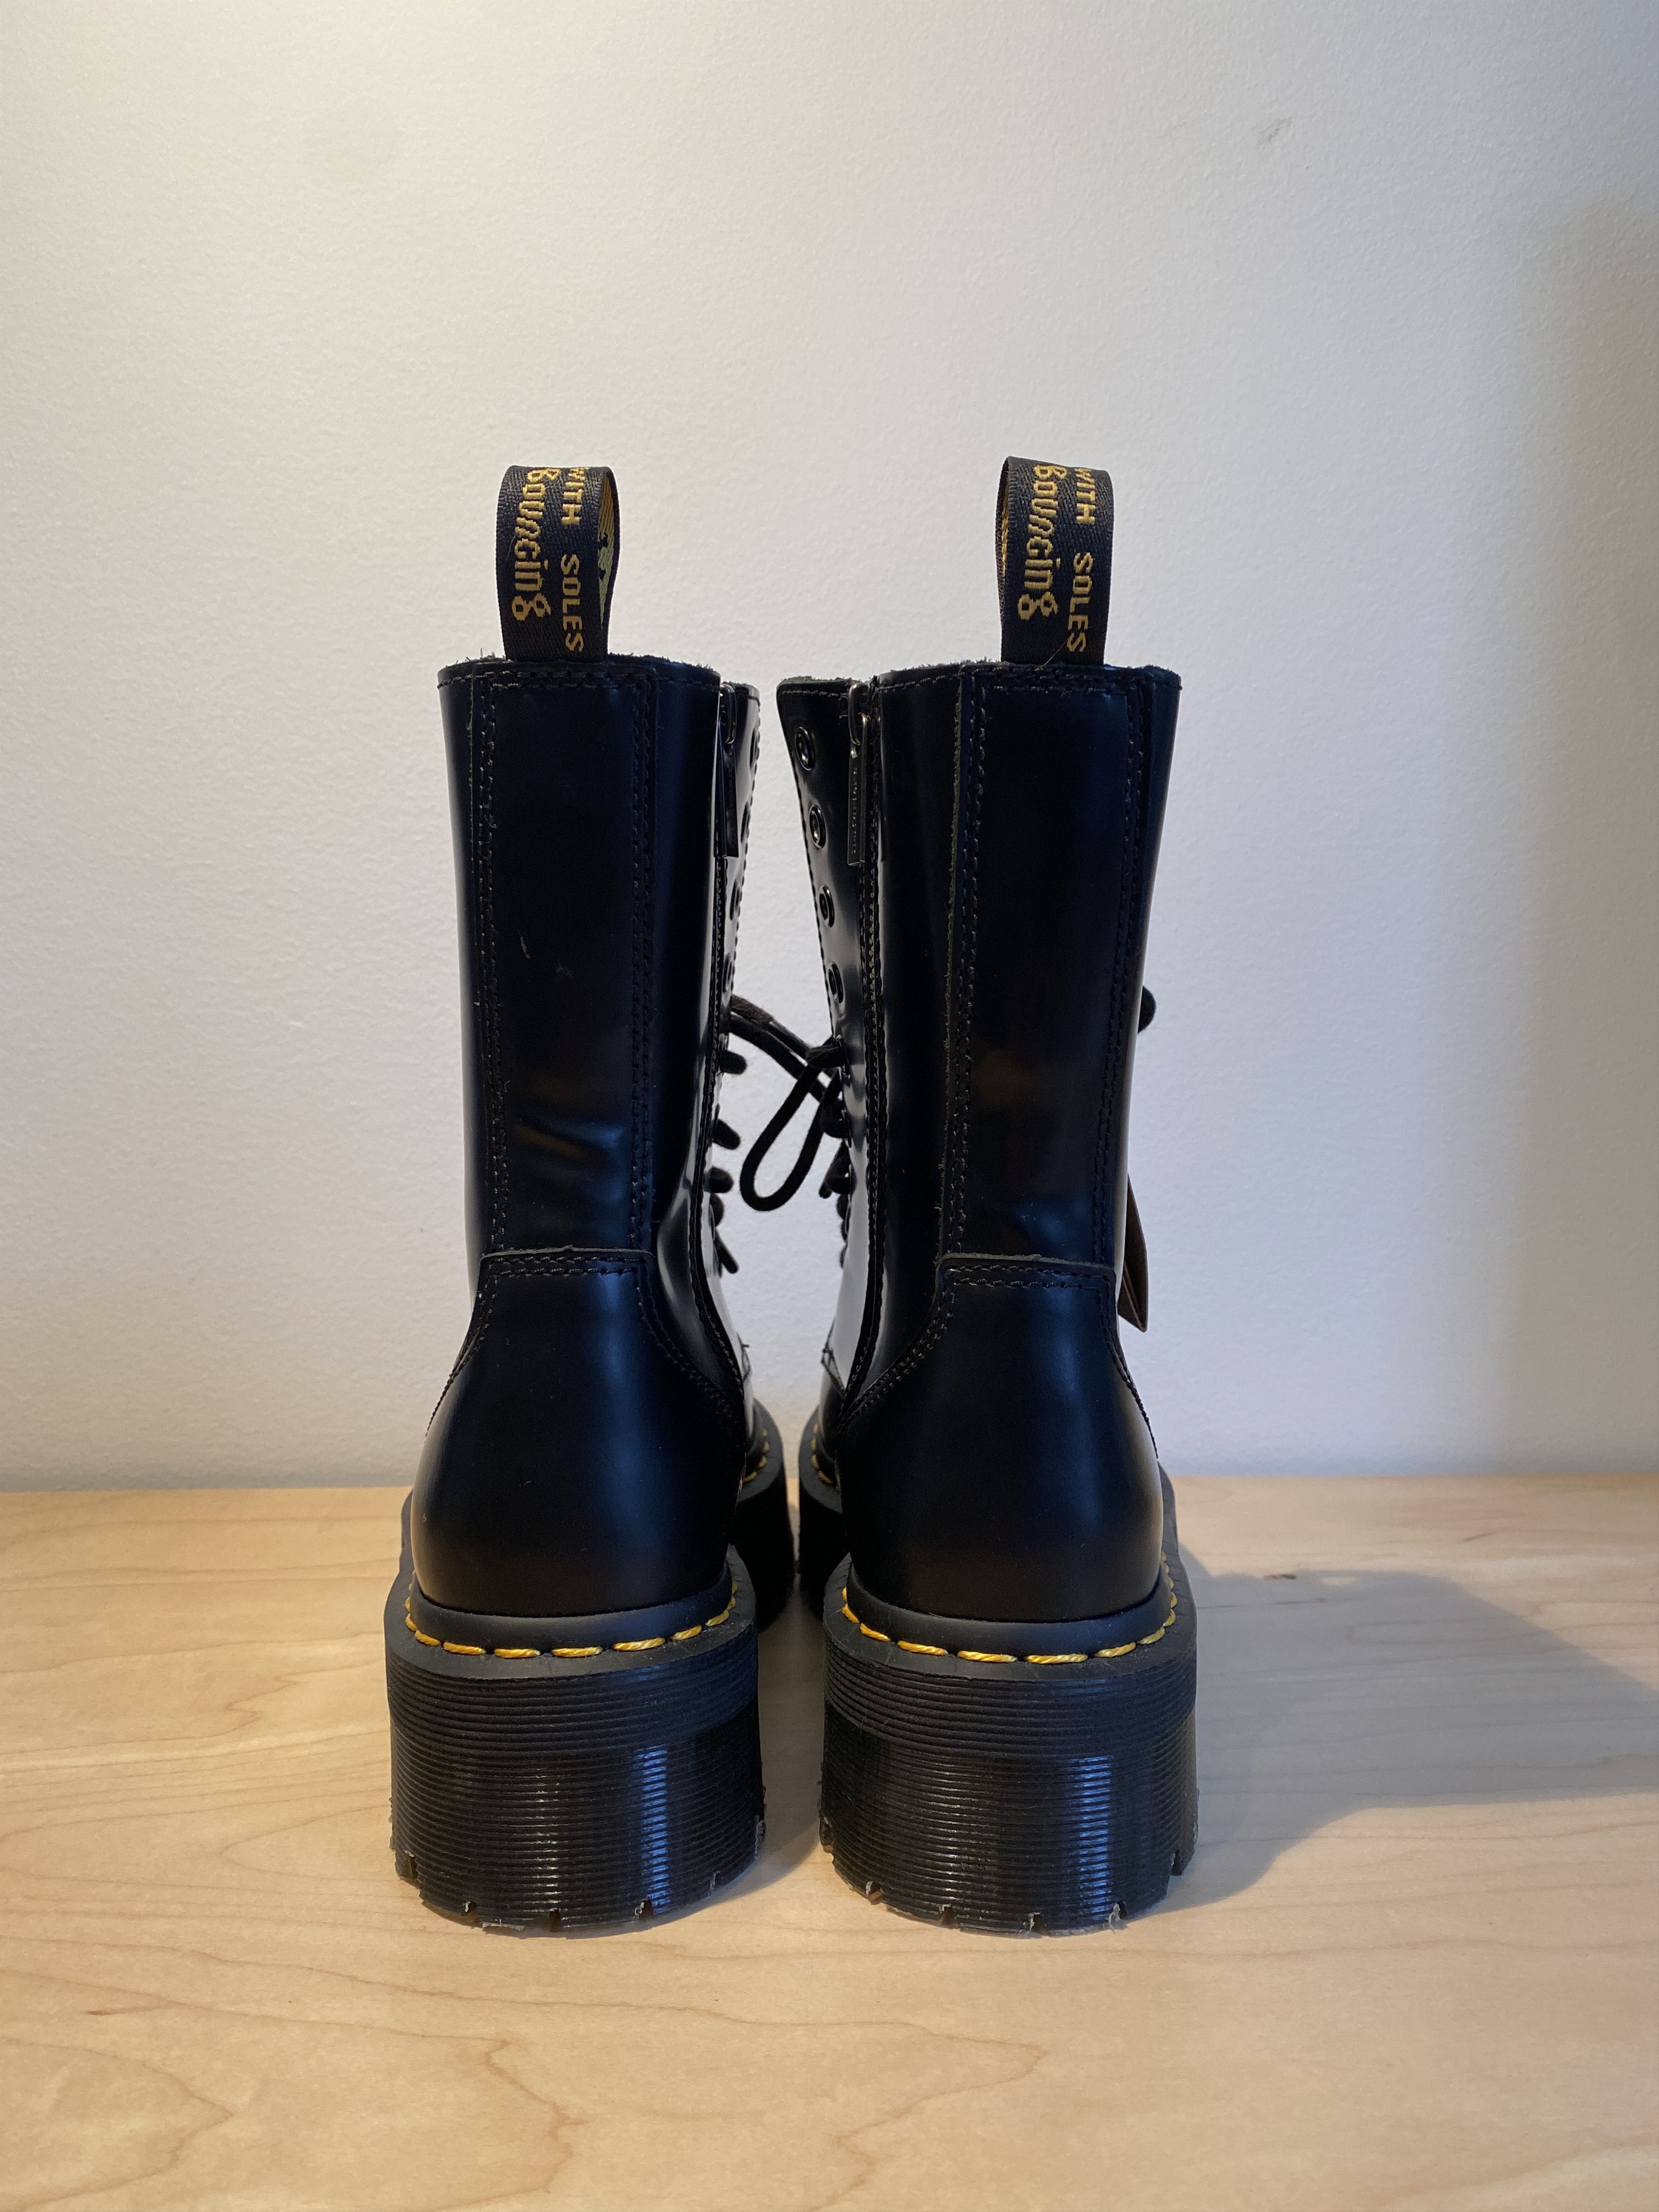 Dr. Martens Dr. Martens Jadon Hi Smooth Leather Platform Boots Size US 6 / EU 39 - 4 Thumbnail